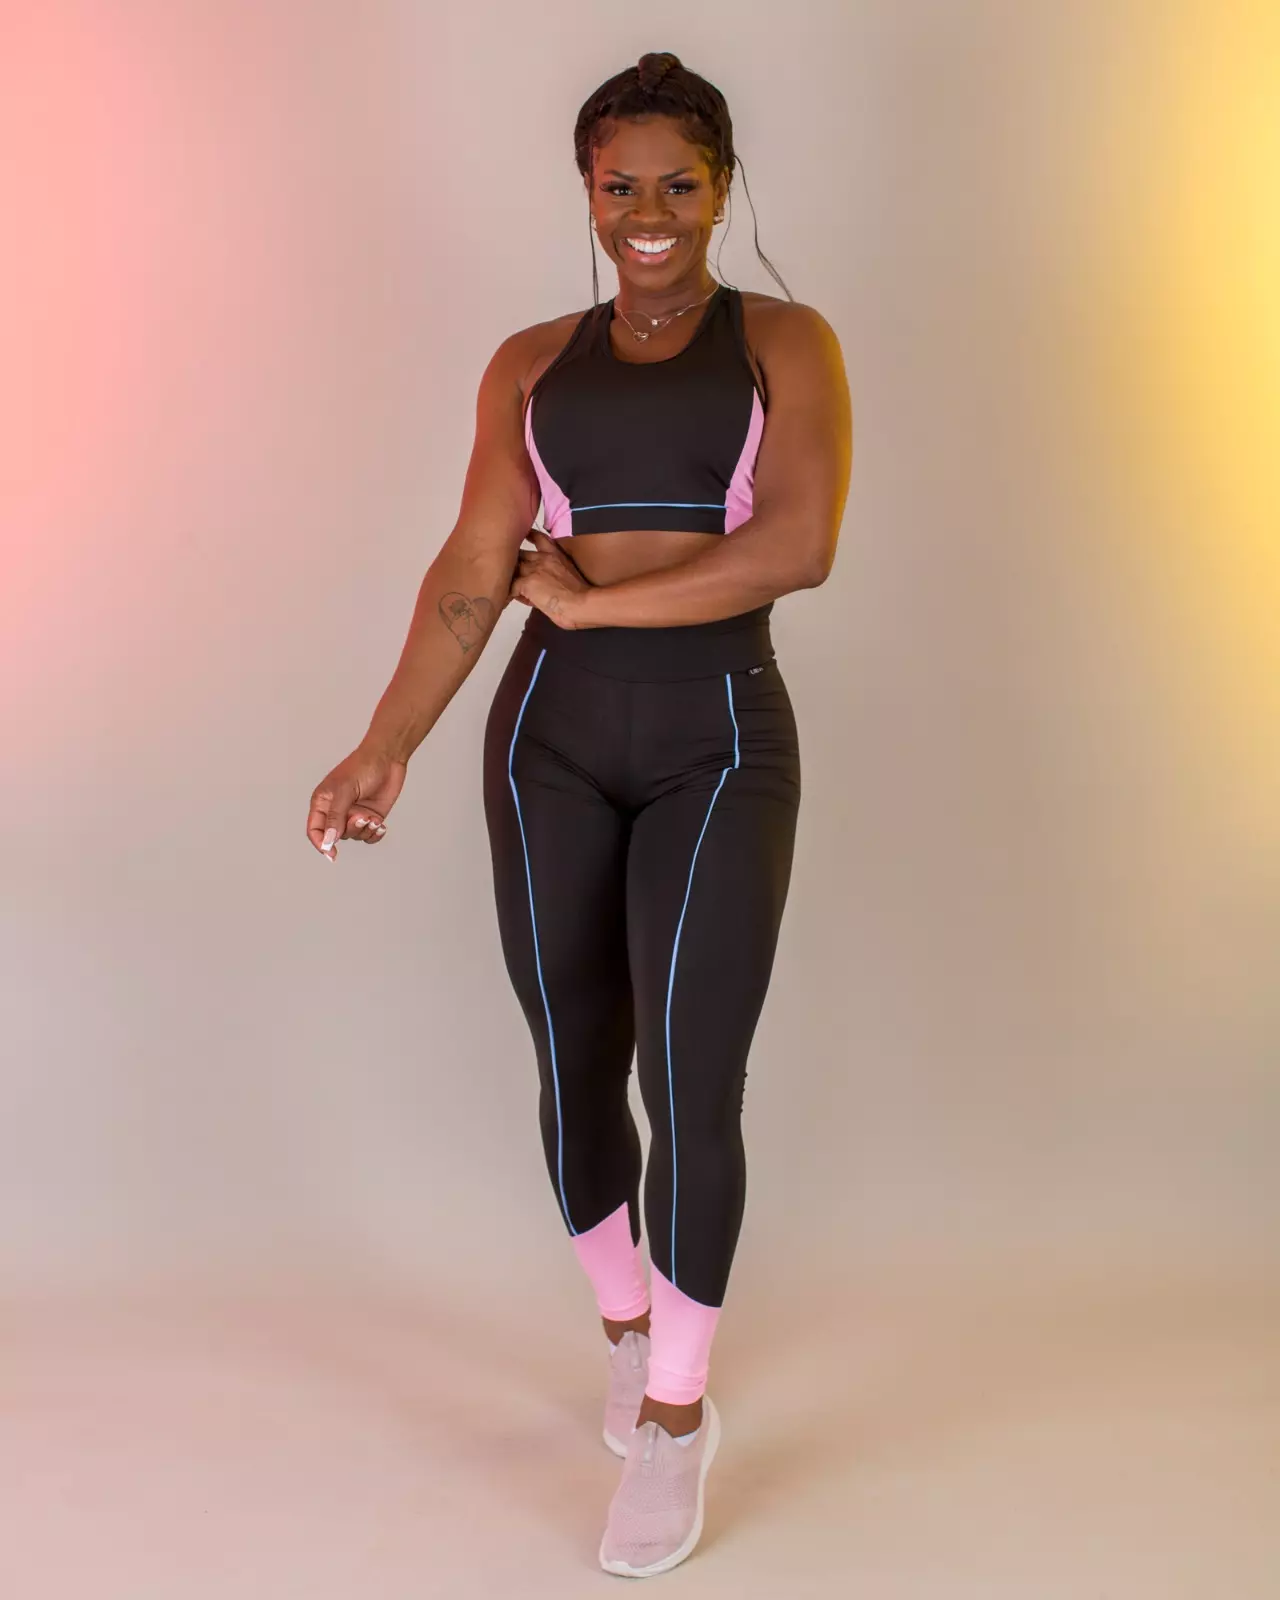 Comprar Conjunto legging Candy Pink com Serenity - a partir de R$53,42 -  Lievi Fitness